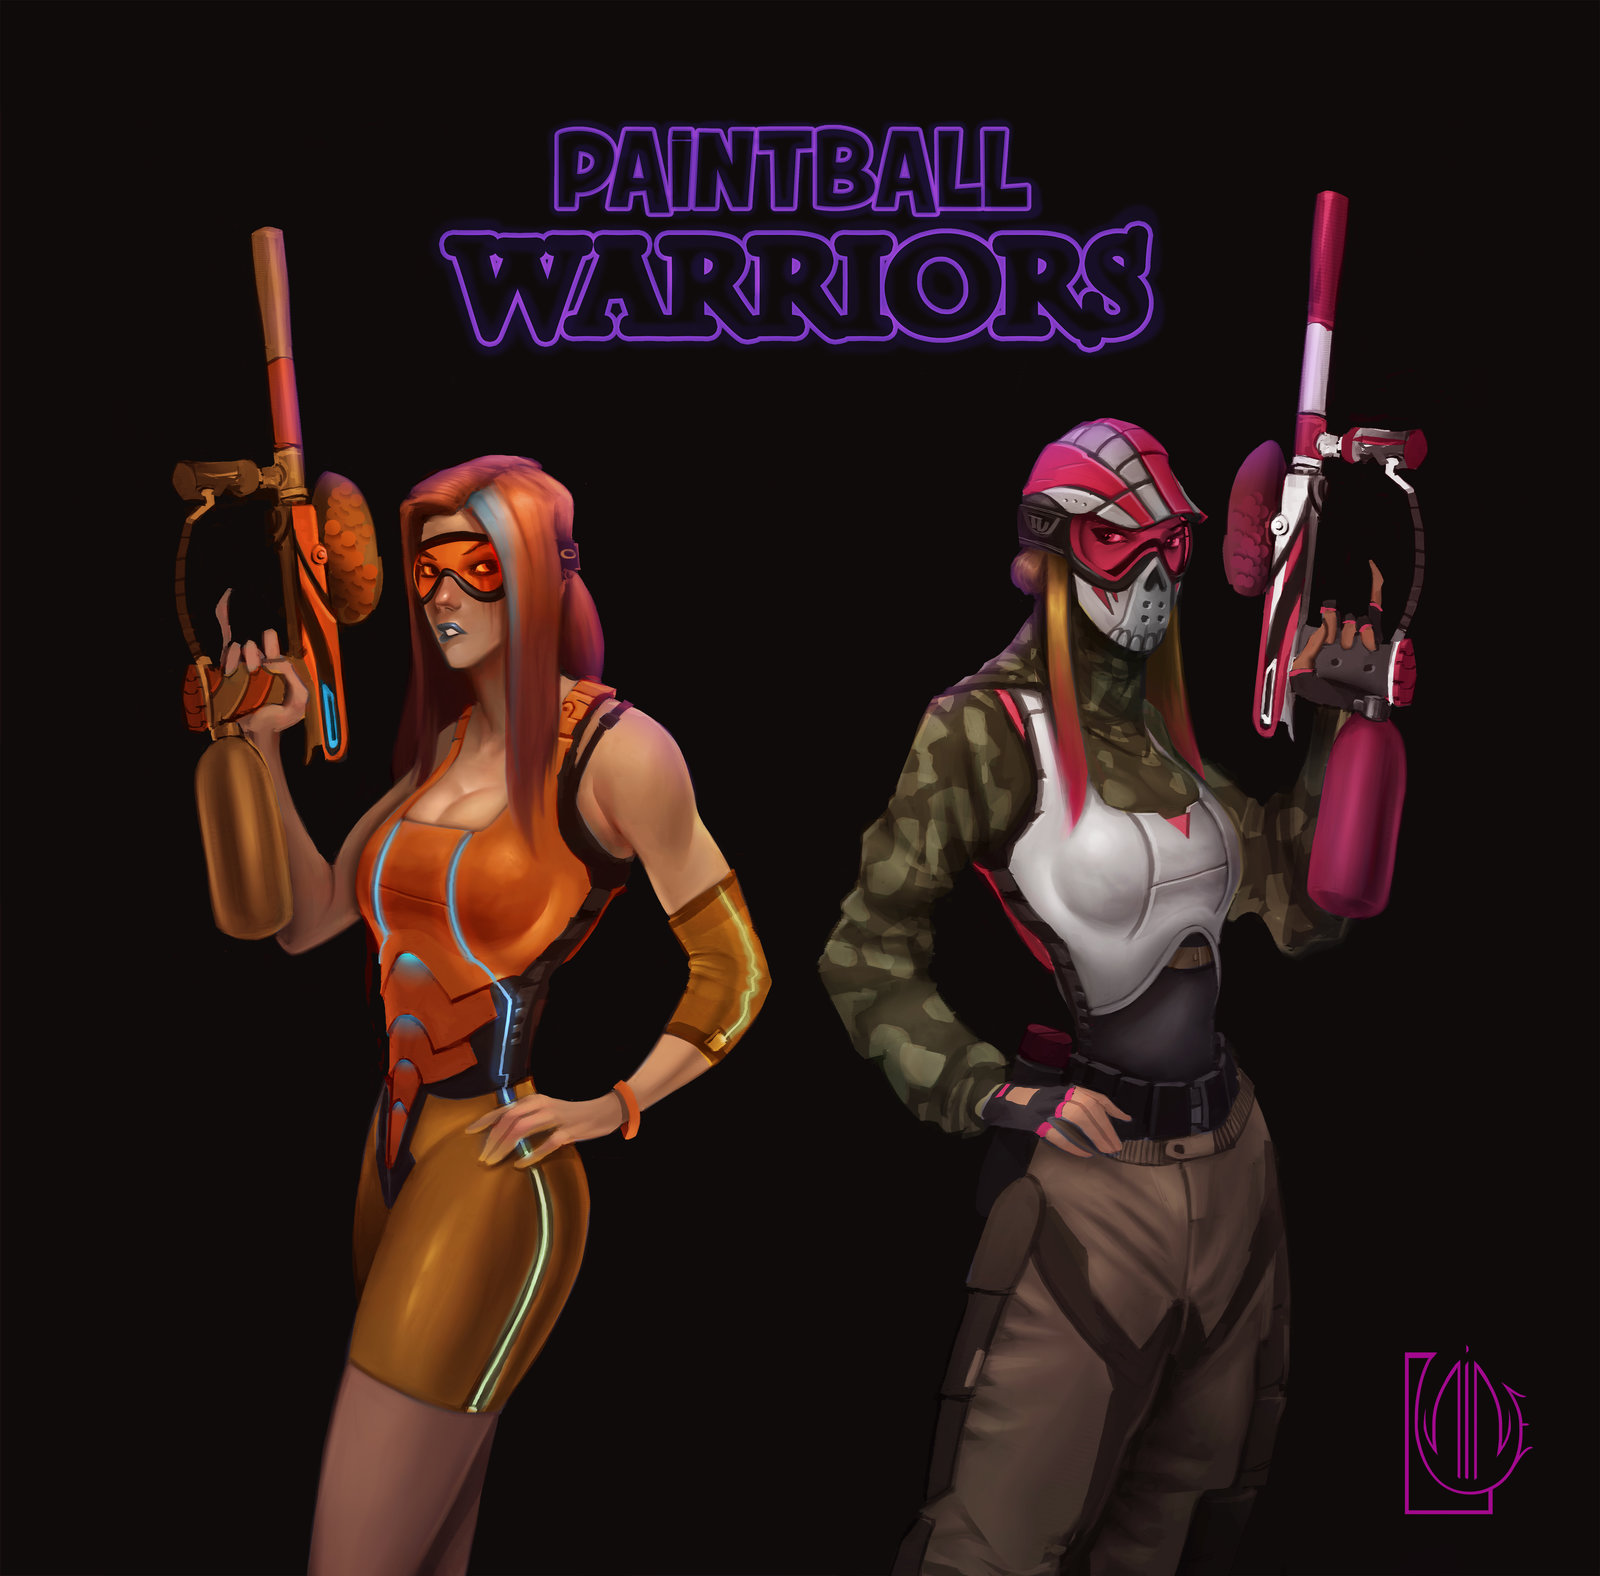 Paintball Warriors